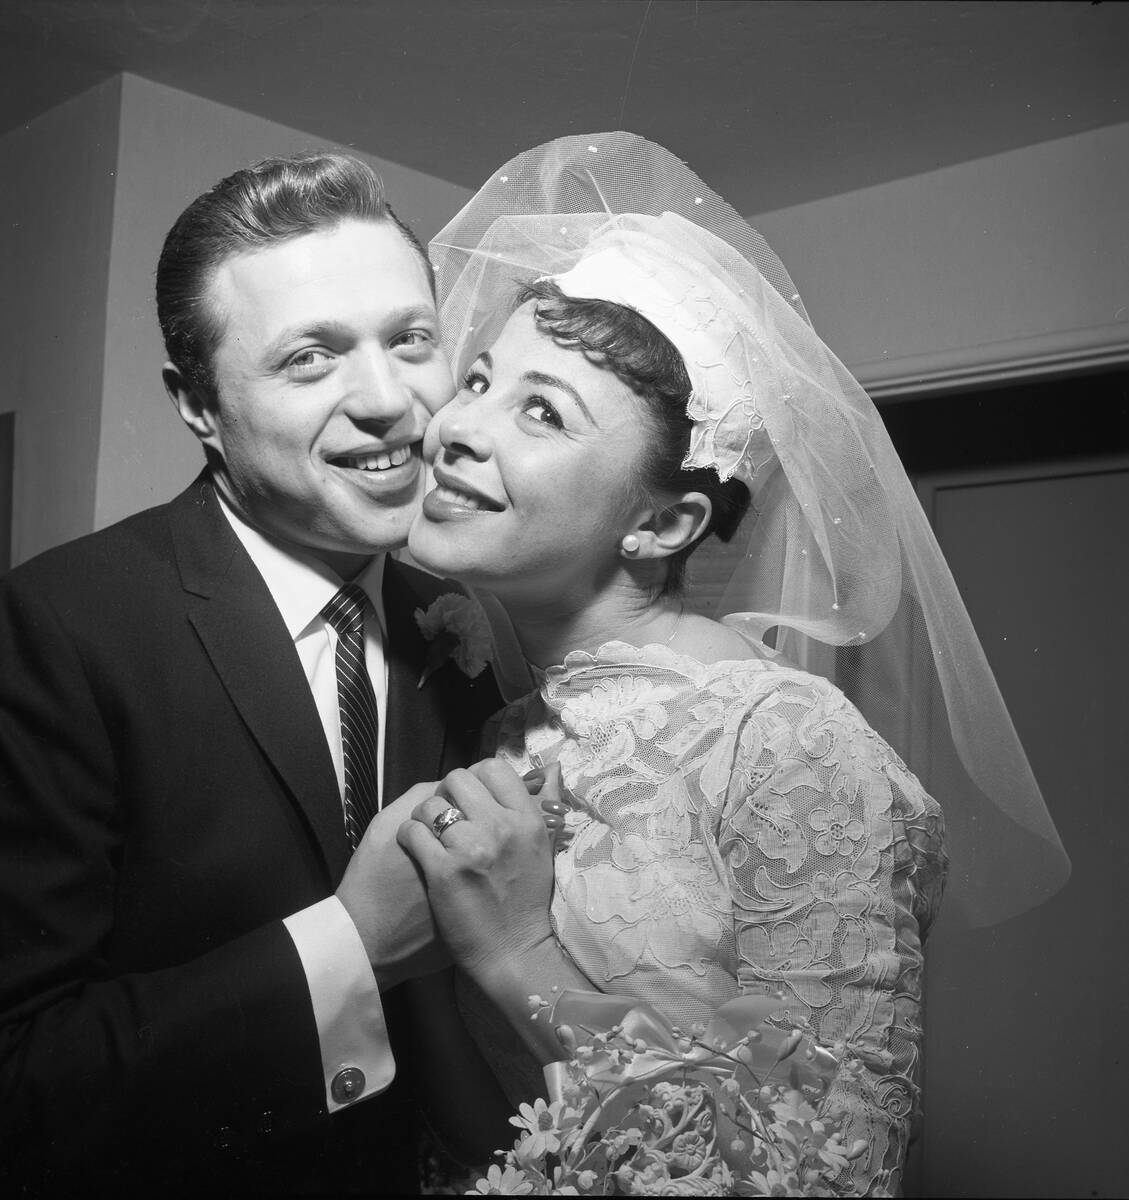 Eydie Gorme and Steve Lawrence wedding at El Rancho on December 29, 1957. (Las Vegas News Bureau)